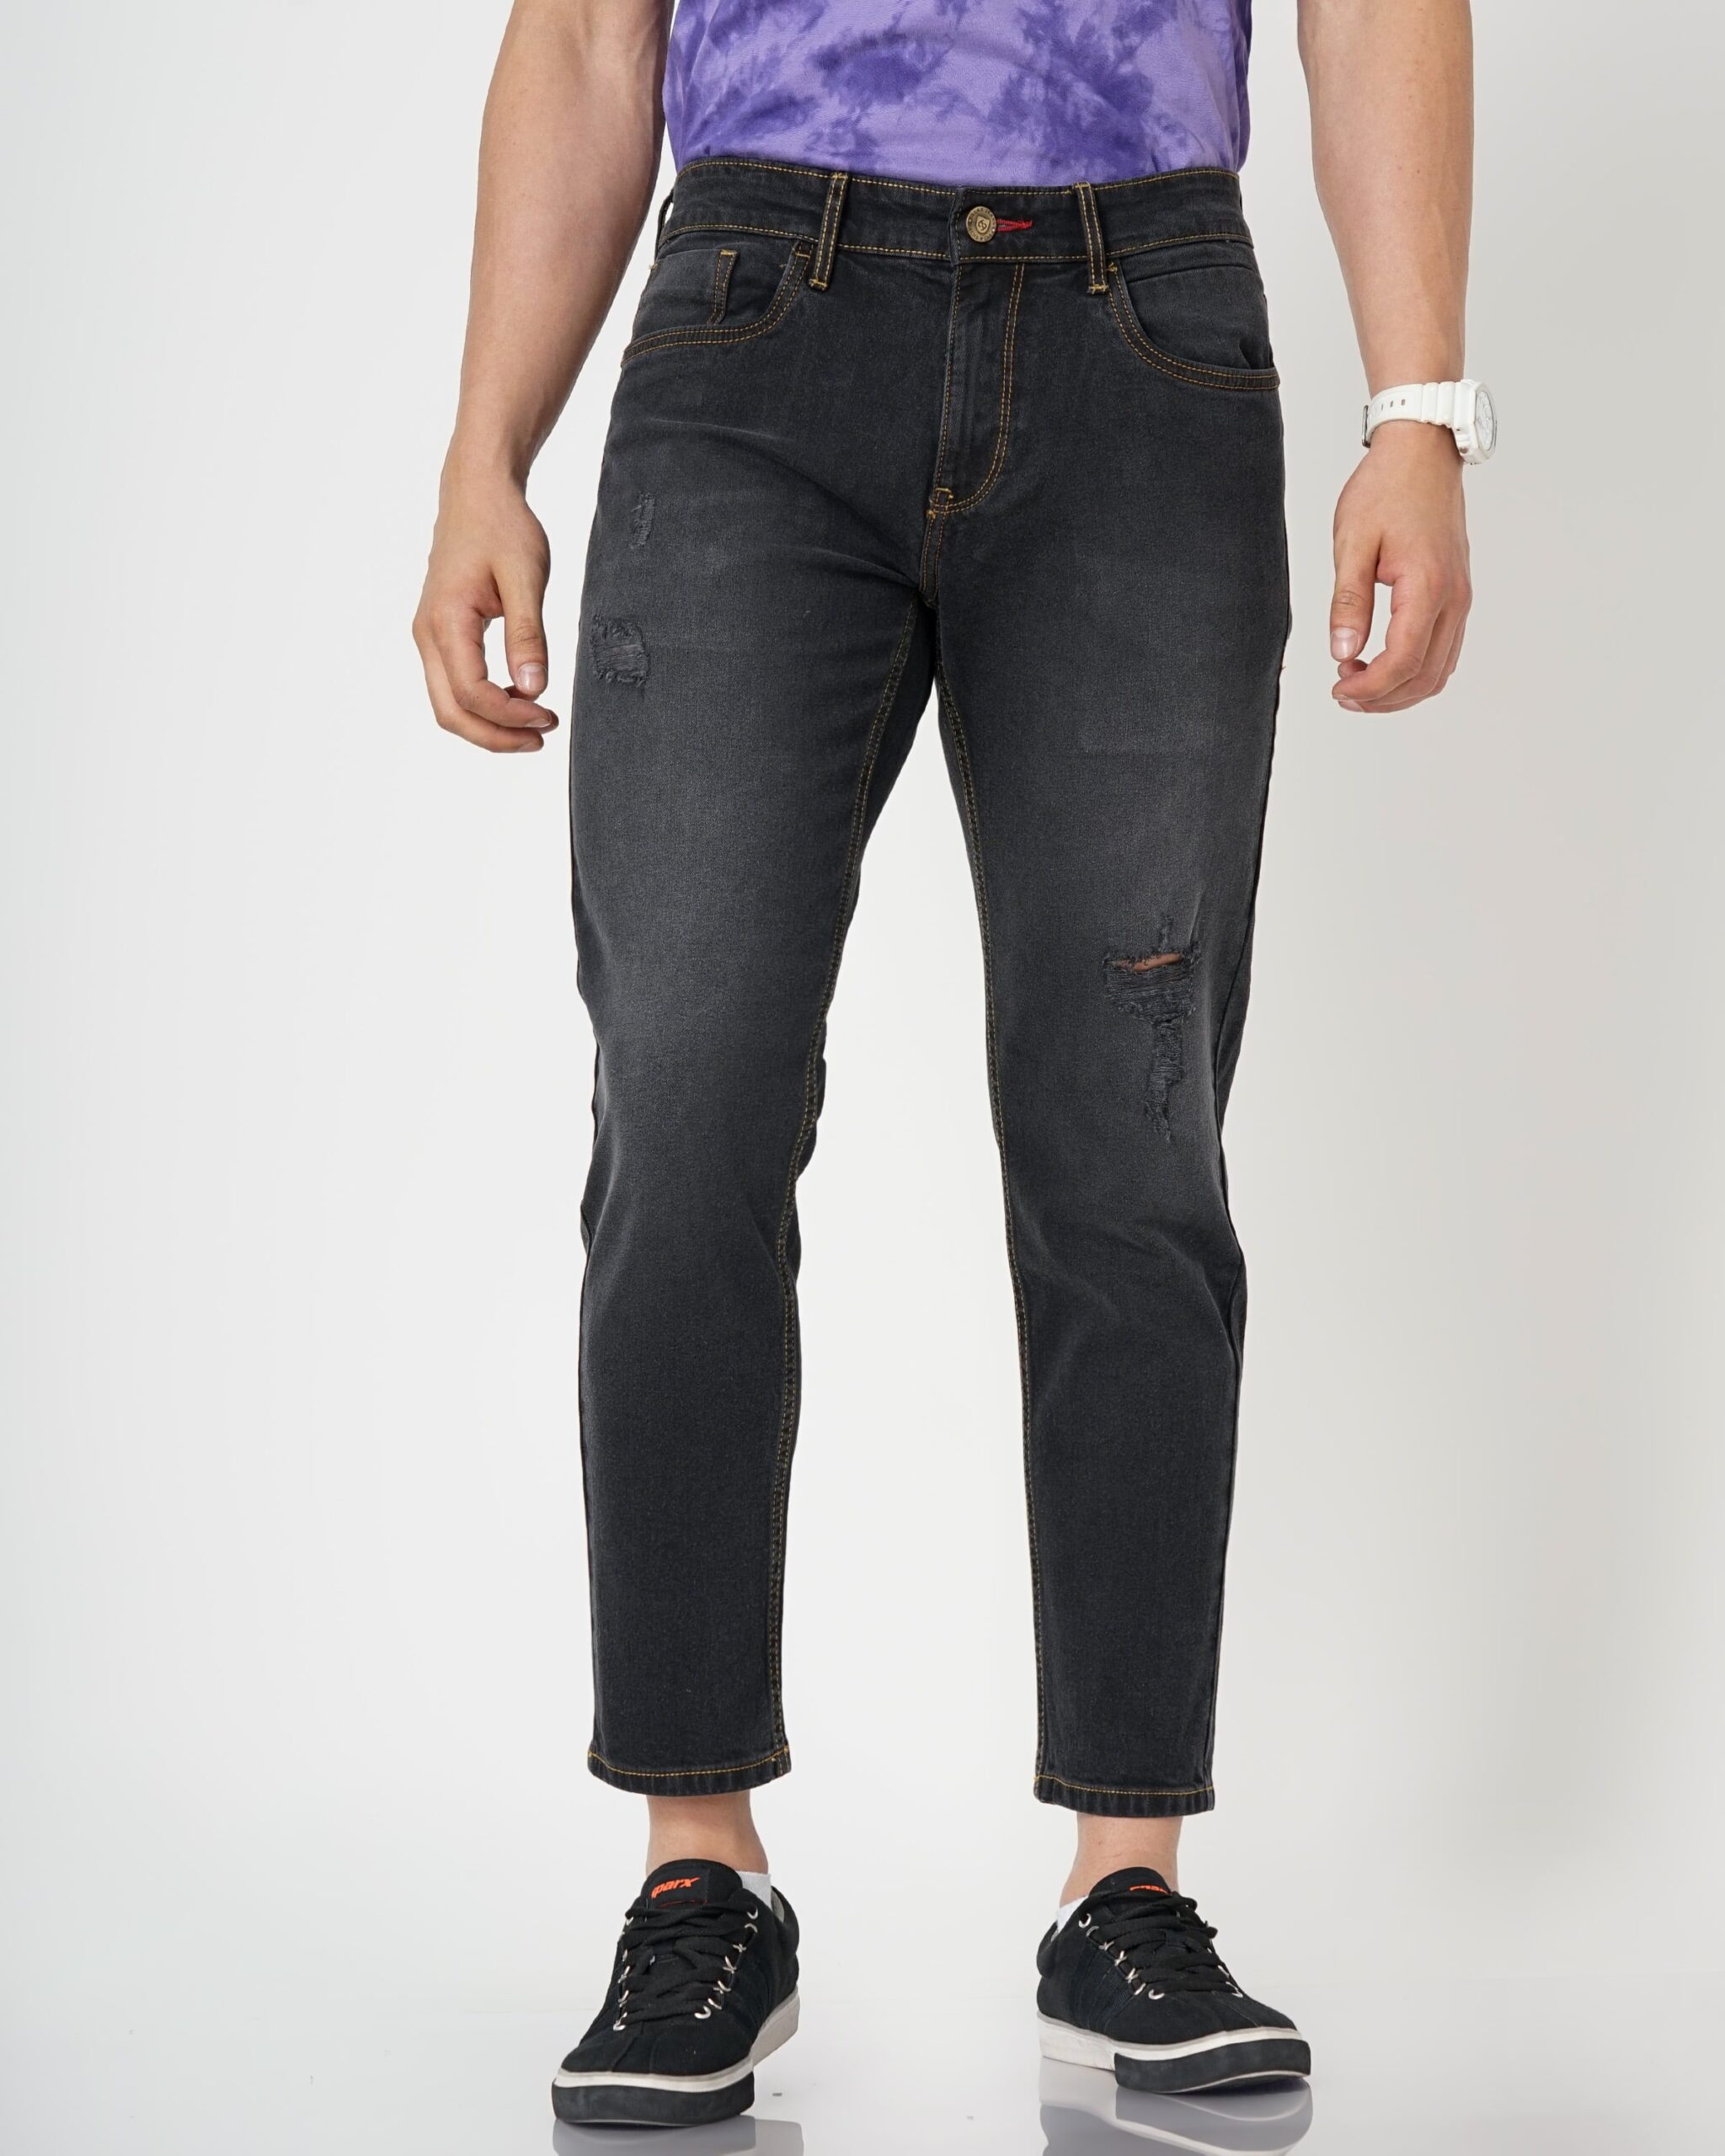 Men’s Black Slim Fit Mid-Rise Stretchable Denim Jeans – LLAK JEANS Fit ...